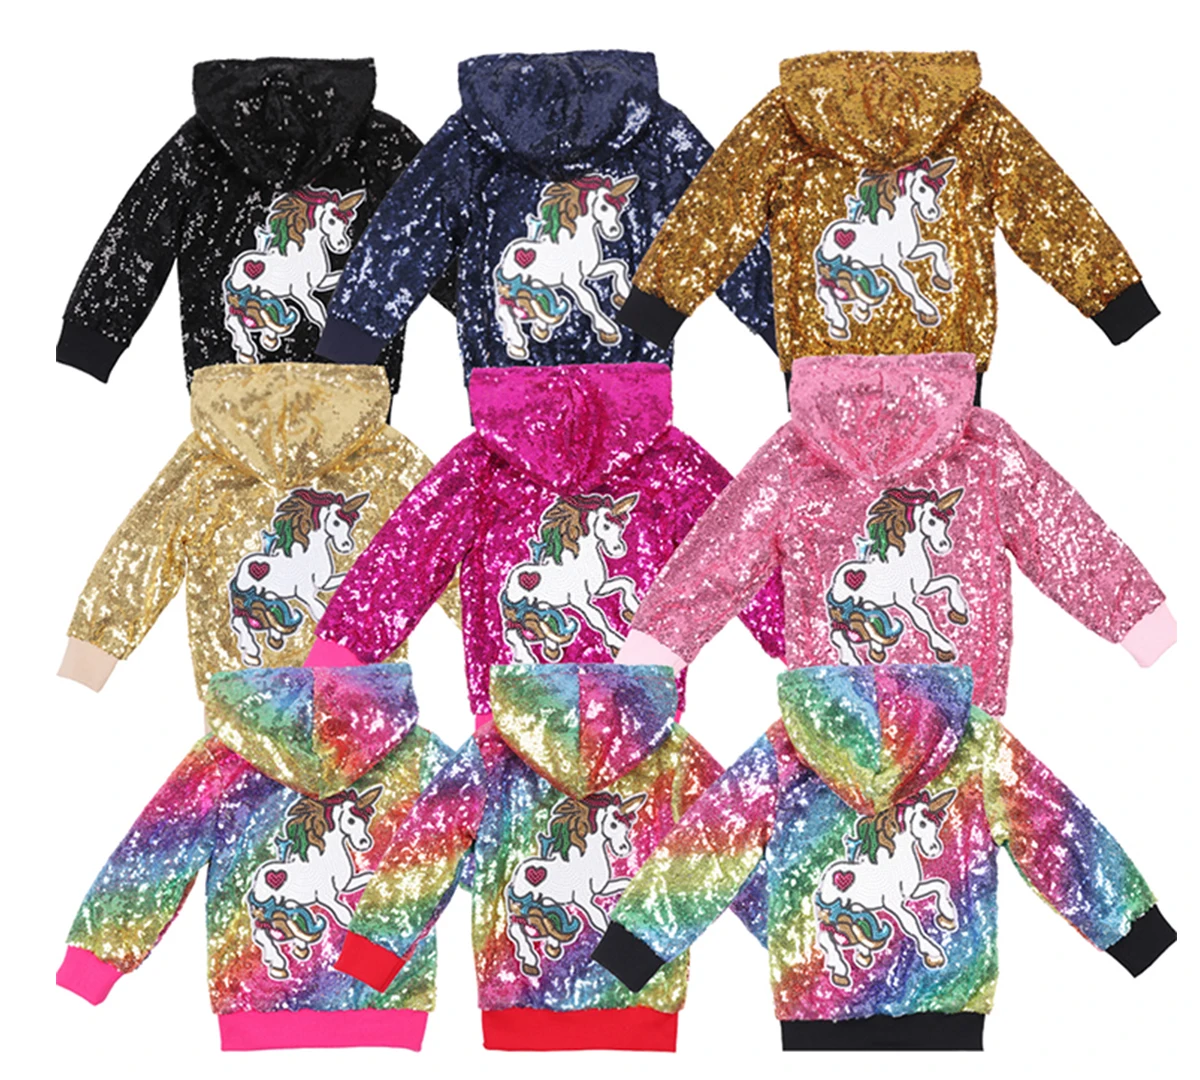 Блестящая кофта с единорогом пальто для маленьких девочек многоцветная куртка для малышей розовая блестящая куртка для маленьких детей Рождественский подарок на год